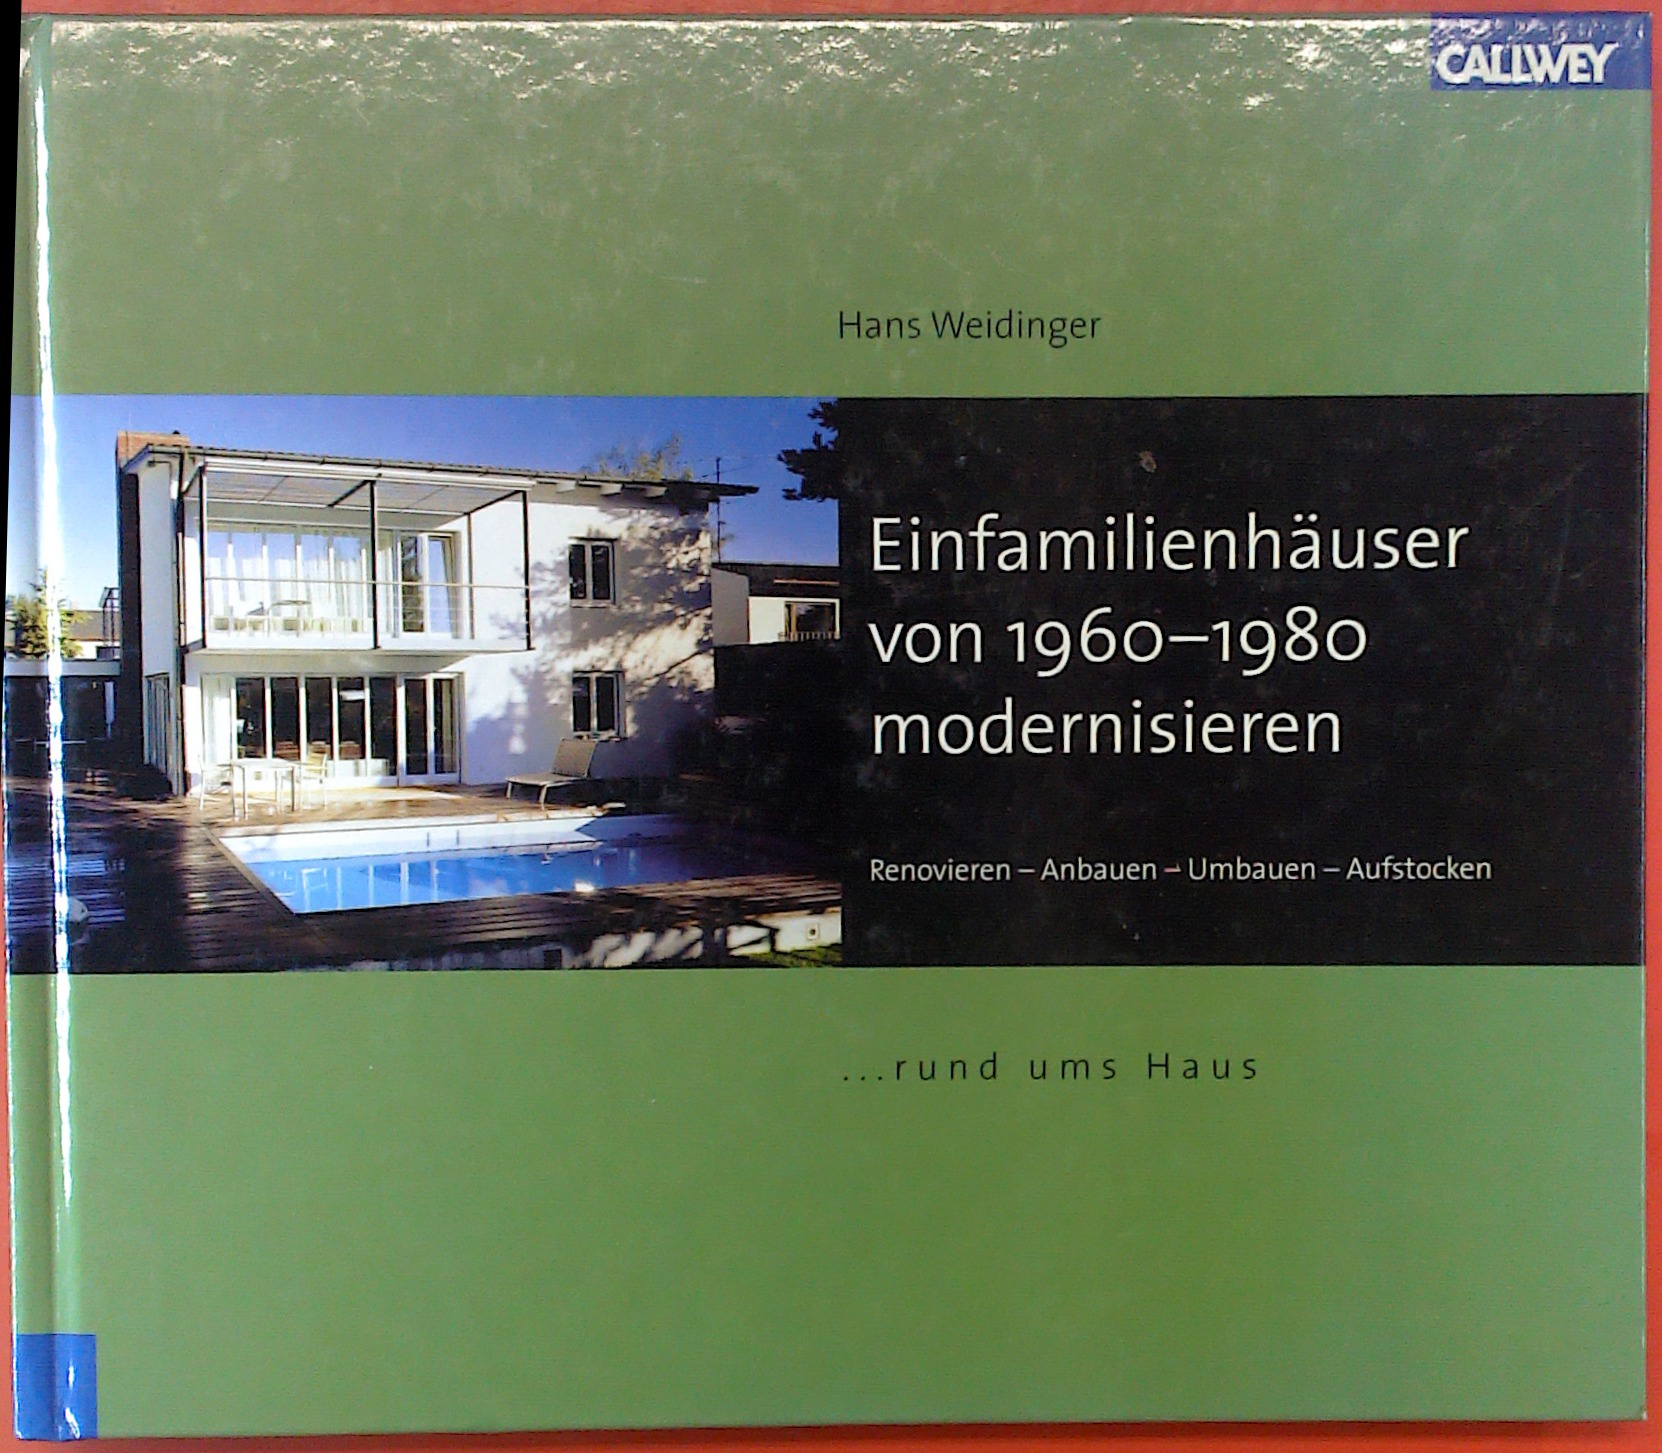 Einfamilienhäuser von 1960 - 1980 modernisieren - Hans Weidinger